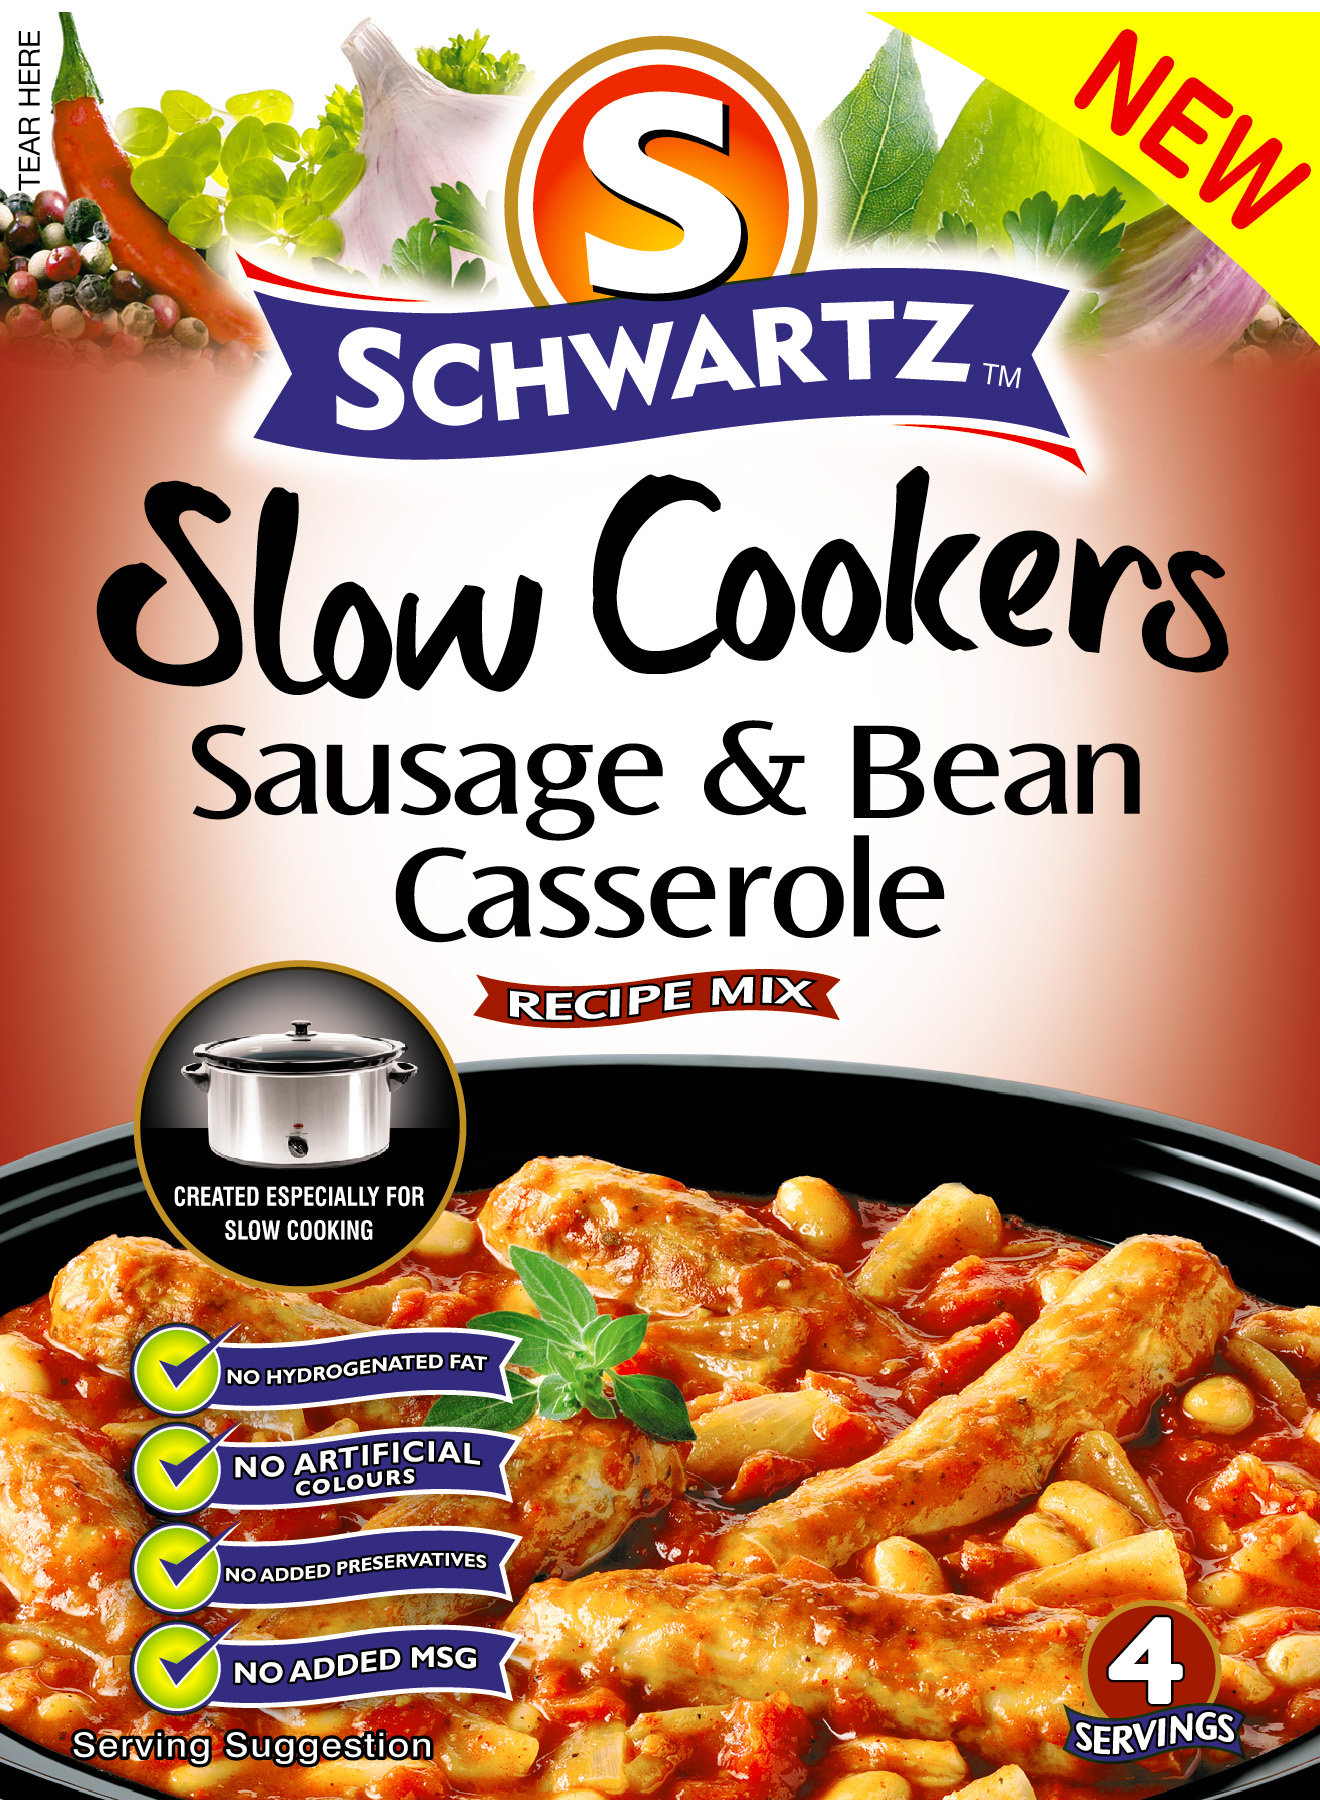 Schwarts sausage & Bean